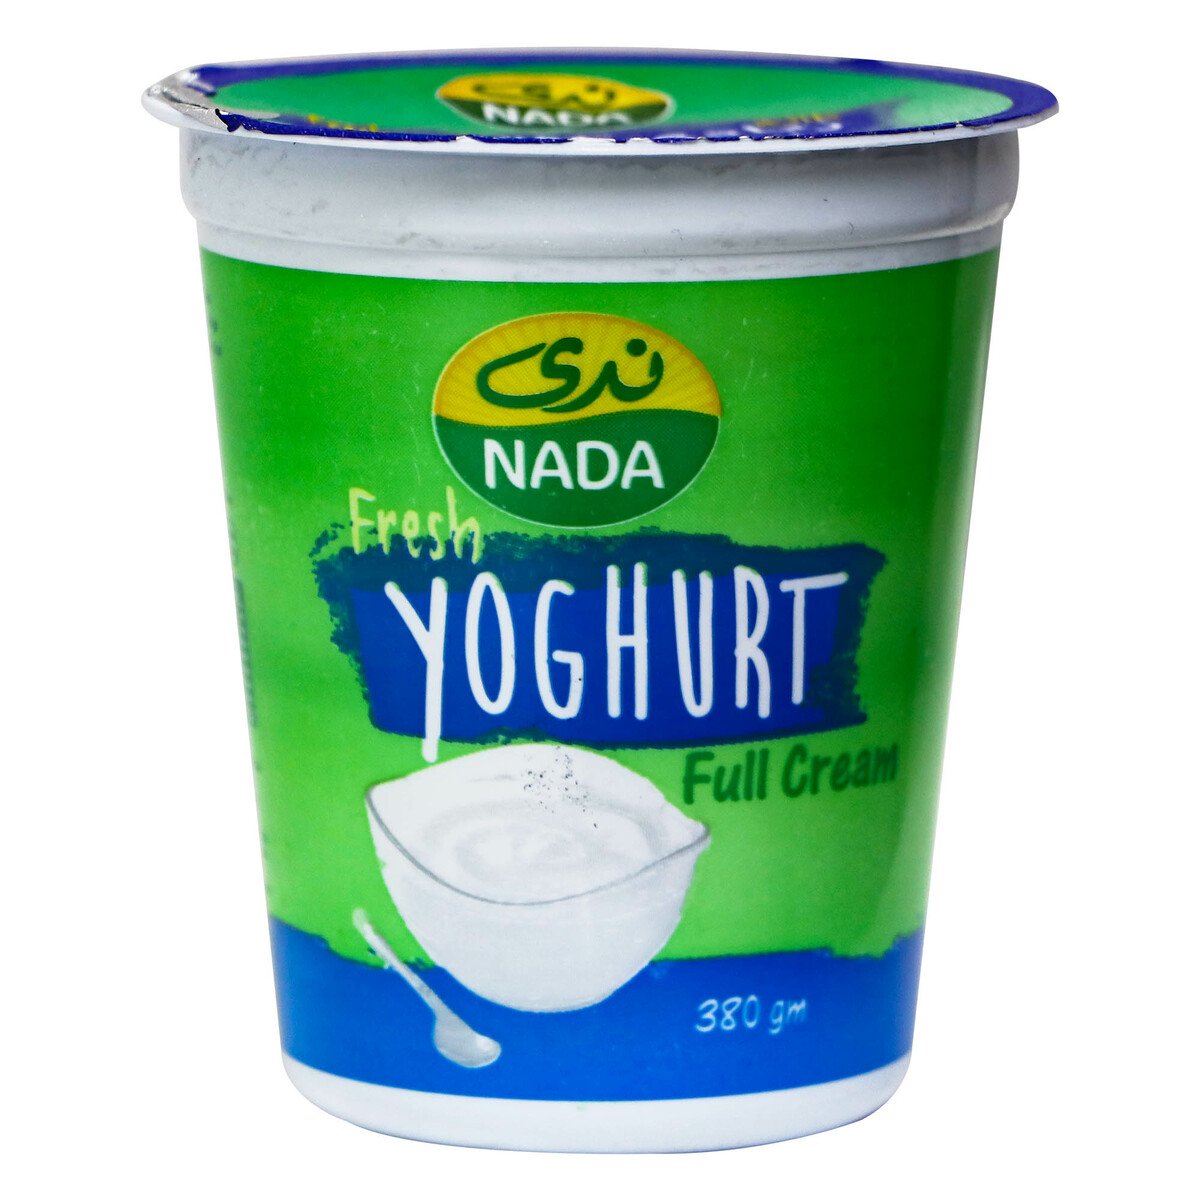 اشتري قم بشراء ندى زبادي طازج كامل الدسم 380 جم Online at Best Price من الموقع - من لولو هايبر ماركت Plain Yoghurt في السعودية